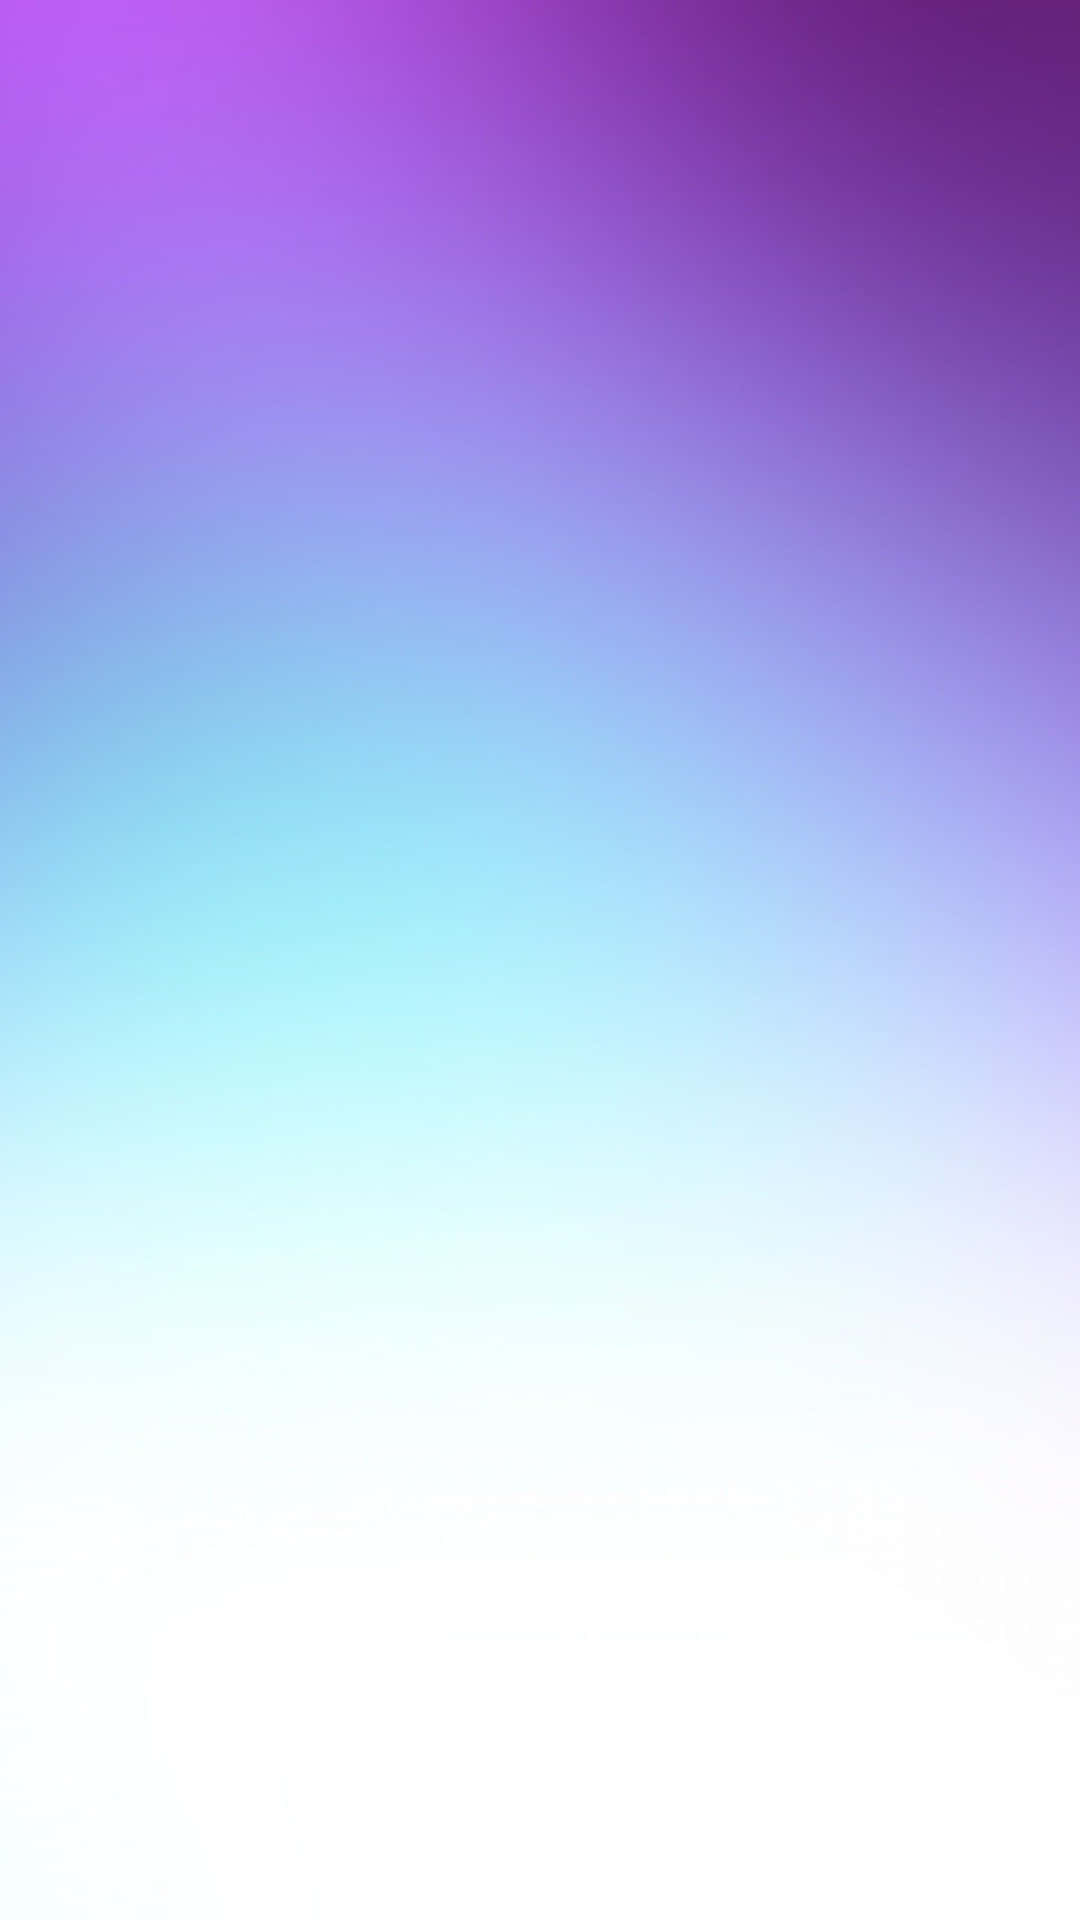 Gradientecolorido De Violeta Y Azul Degradado Fondo de pantalla